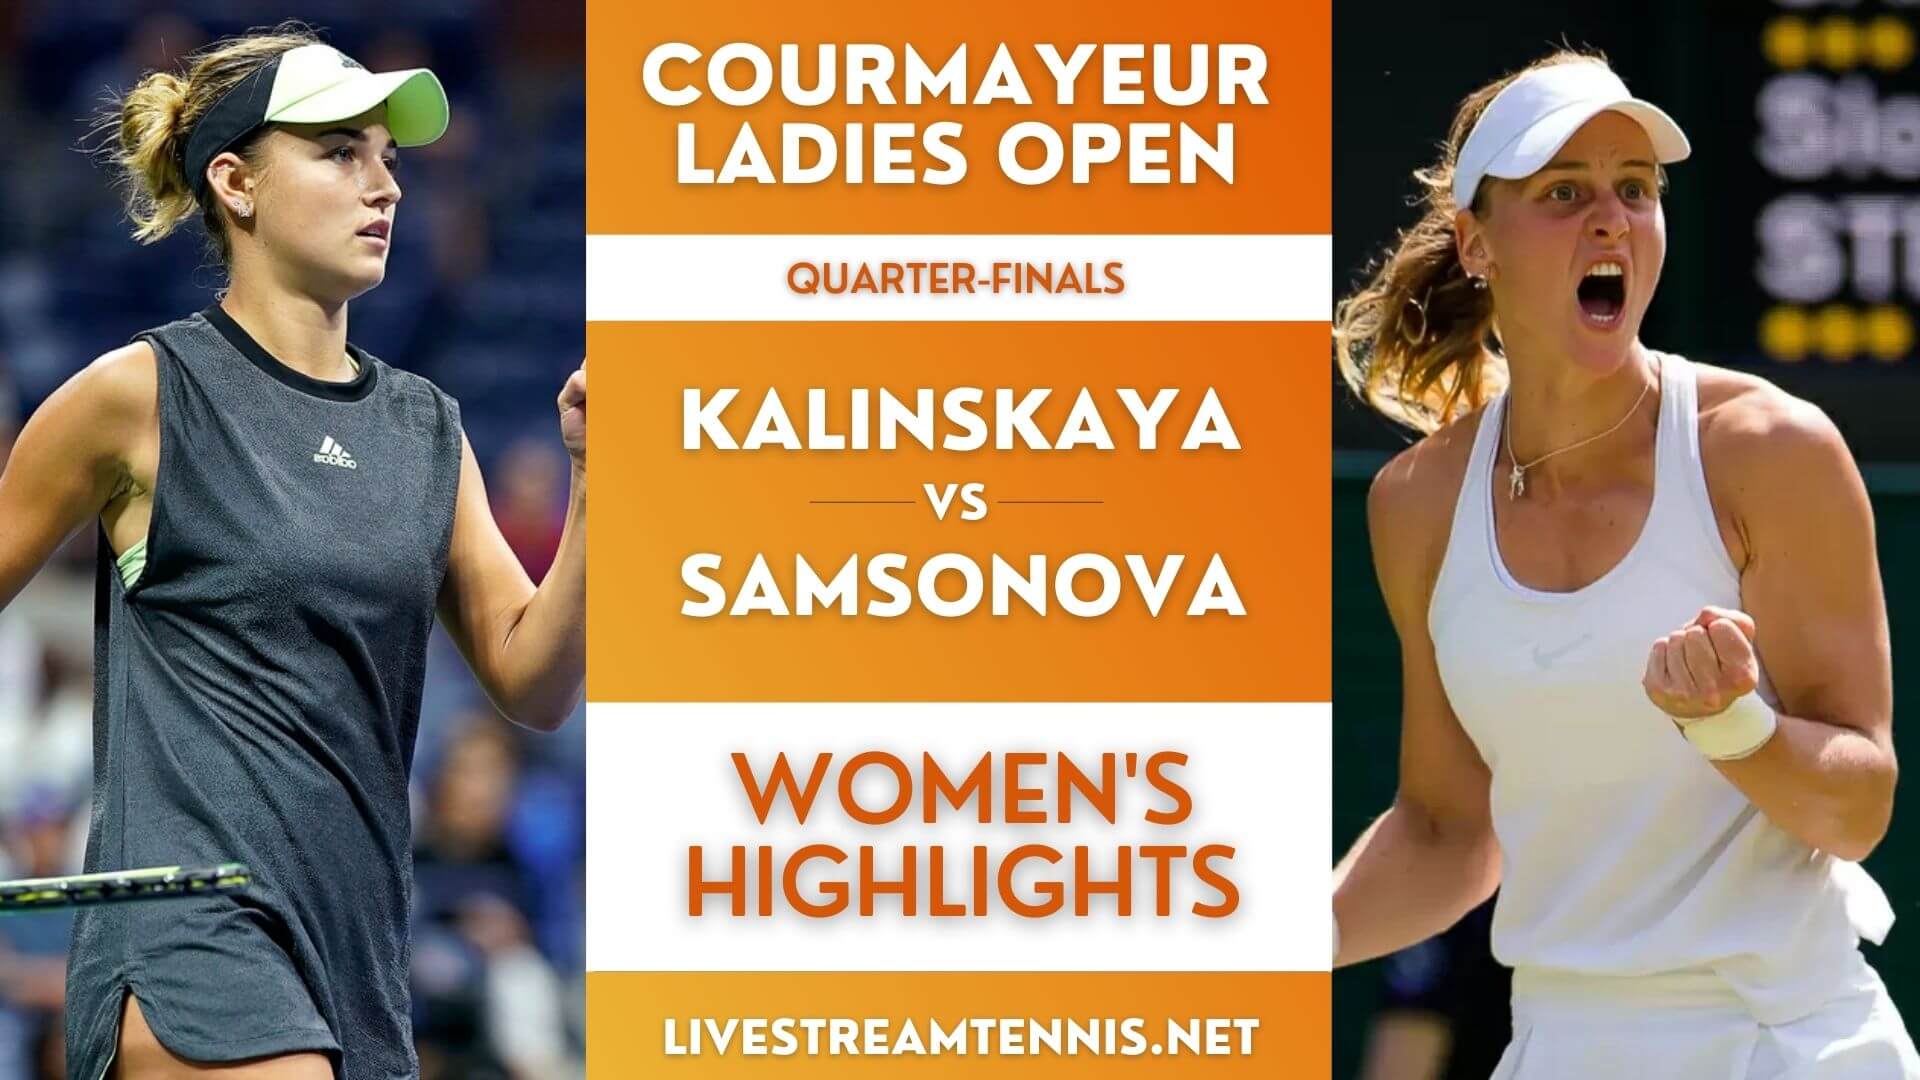 Courmayeur Ladies Open WTA Quarter Final 3 Highlights 2021